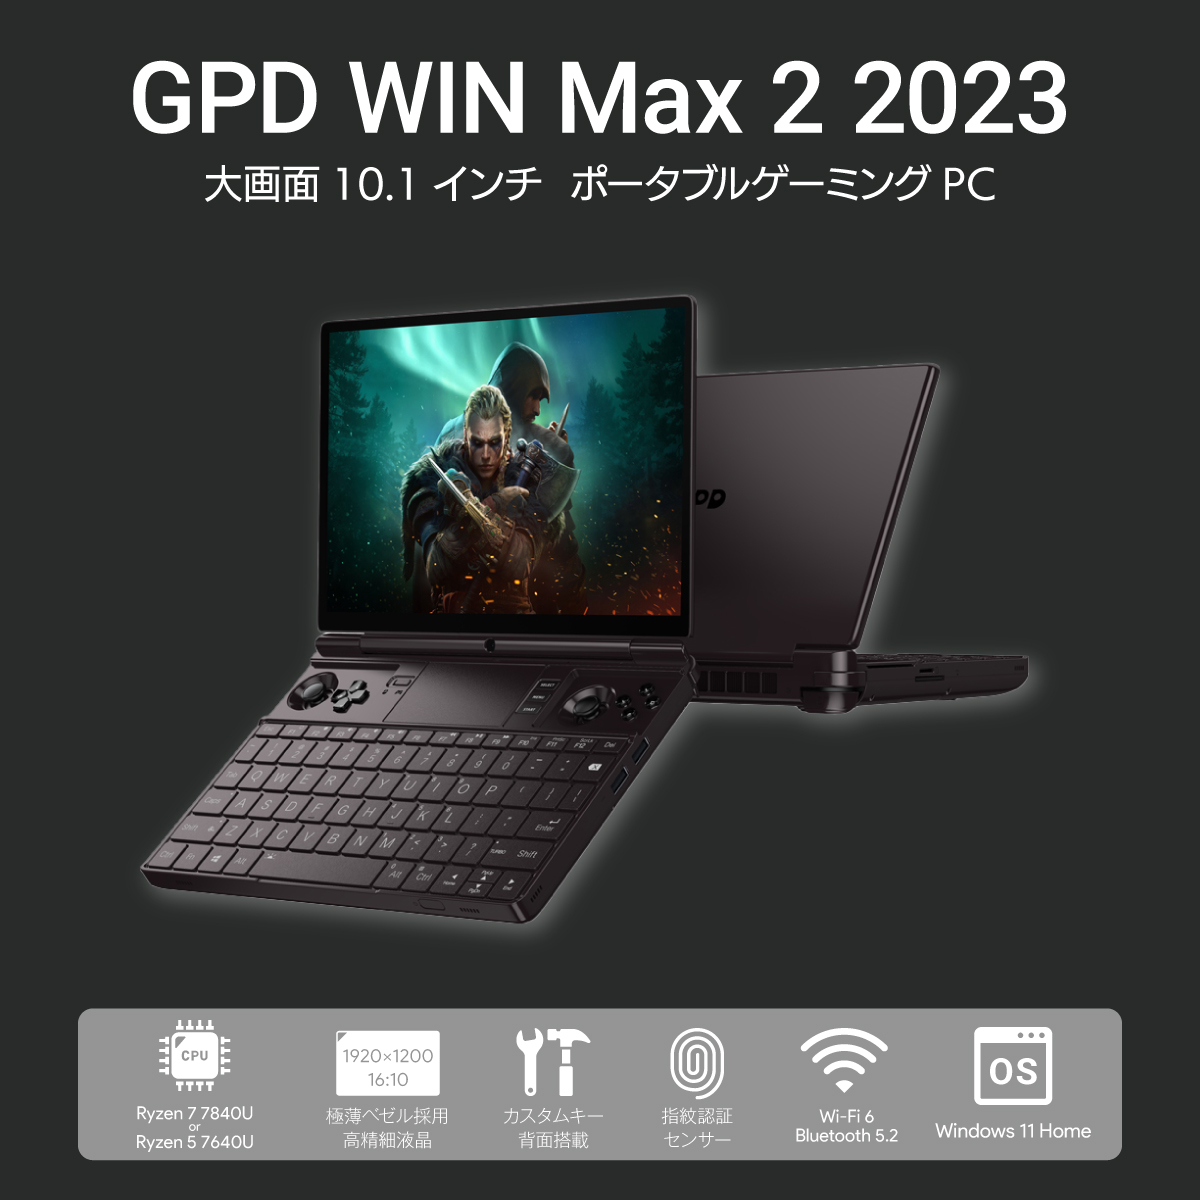 GPD WIN Max 2 2023